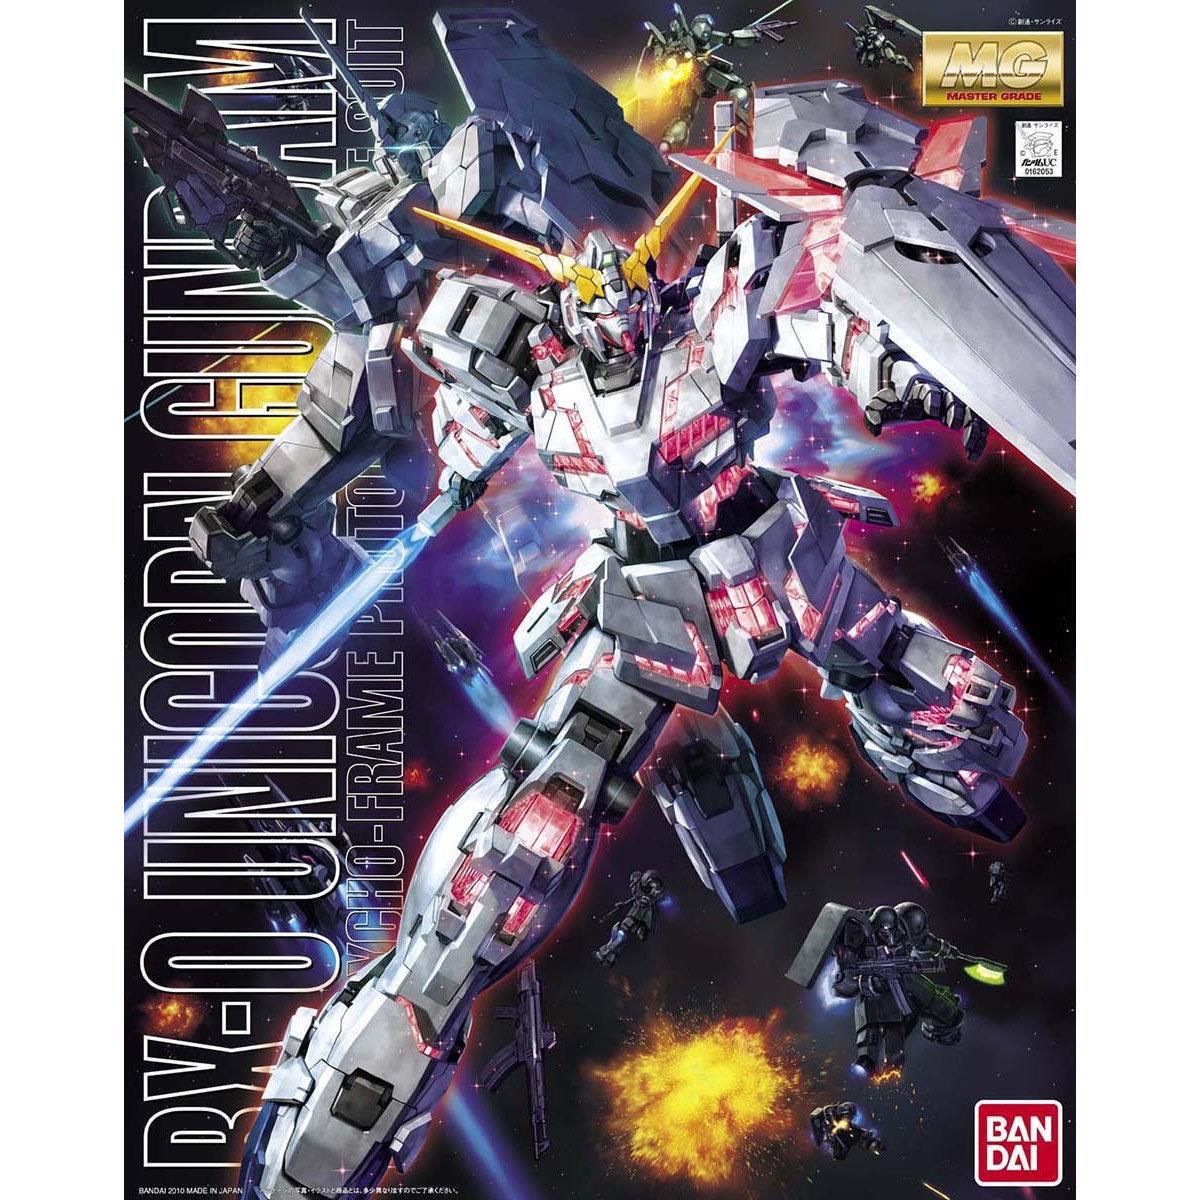 Gundam: RX-0 Unicorn Gundam MG Model